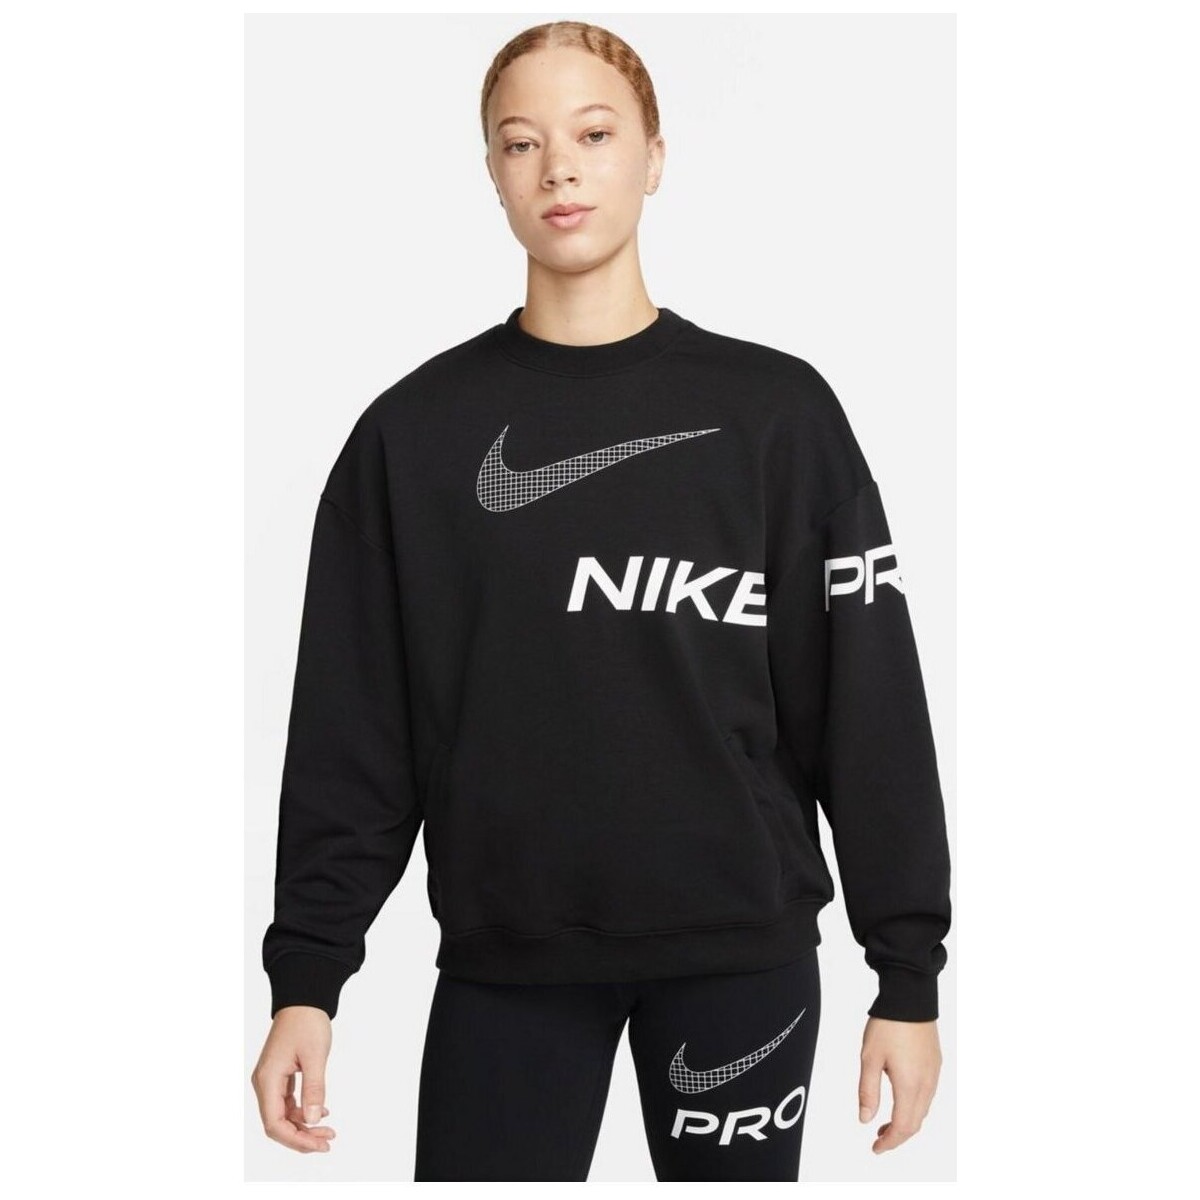 Kleidung Damen Sweatshirts Nike Sport  DRI-FIT GET FIT WOMEN'S C DX0074 010 Schwarz